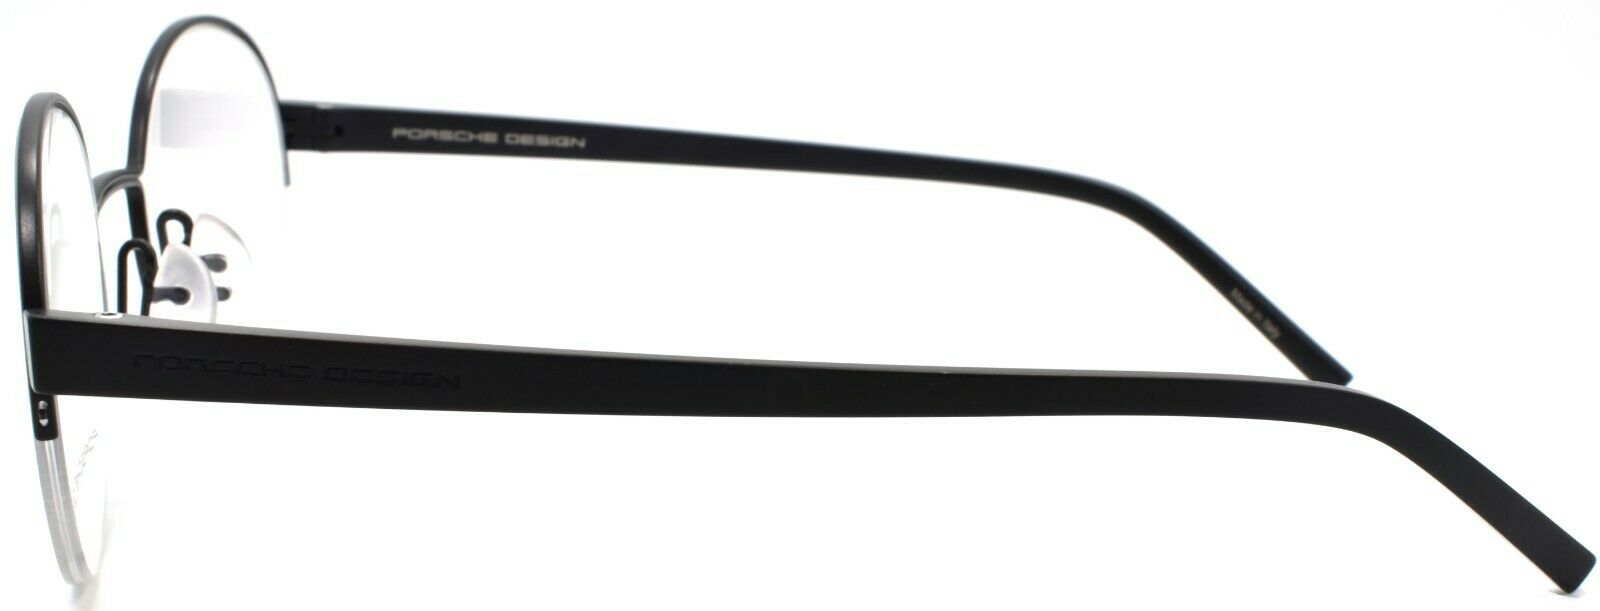 3-Porsche Design P8350 A Eyeglasses Frames Half-rim Round 50-22-145 Black-4046901603984-IKSpecs